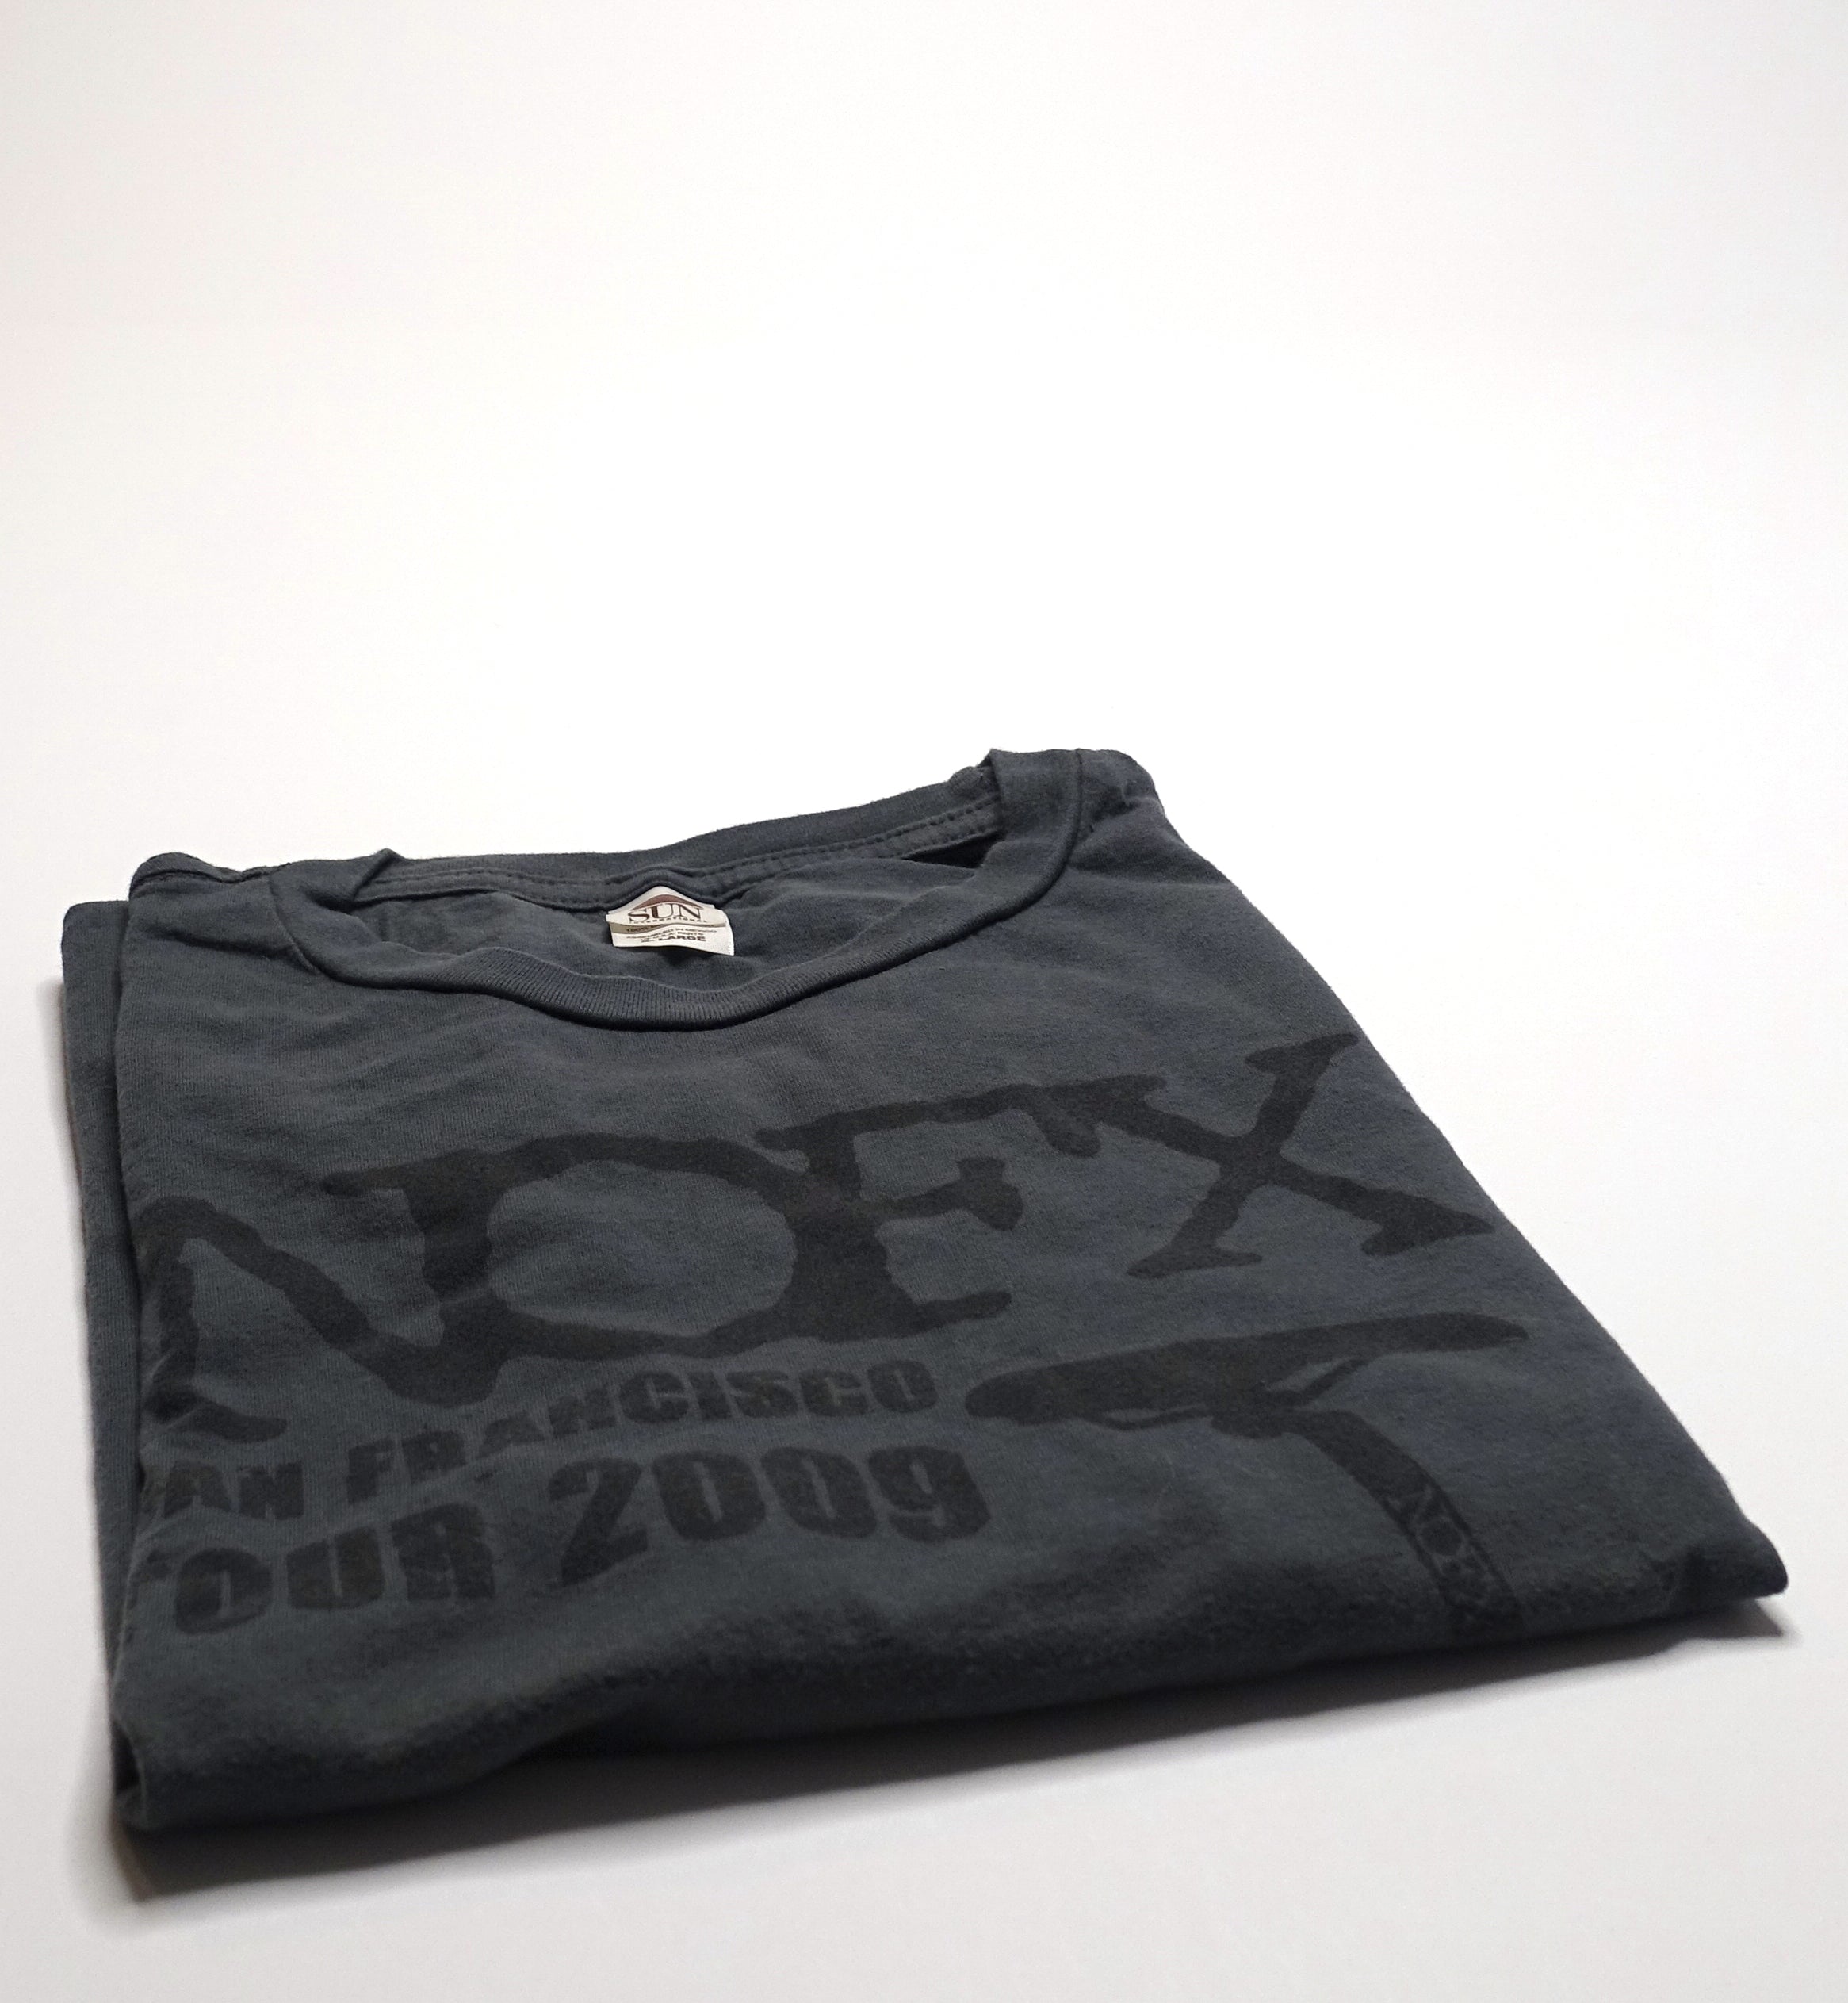 NOFX - San Francisco 4 Club 2009 "Tour" Shirt Size XL